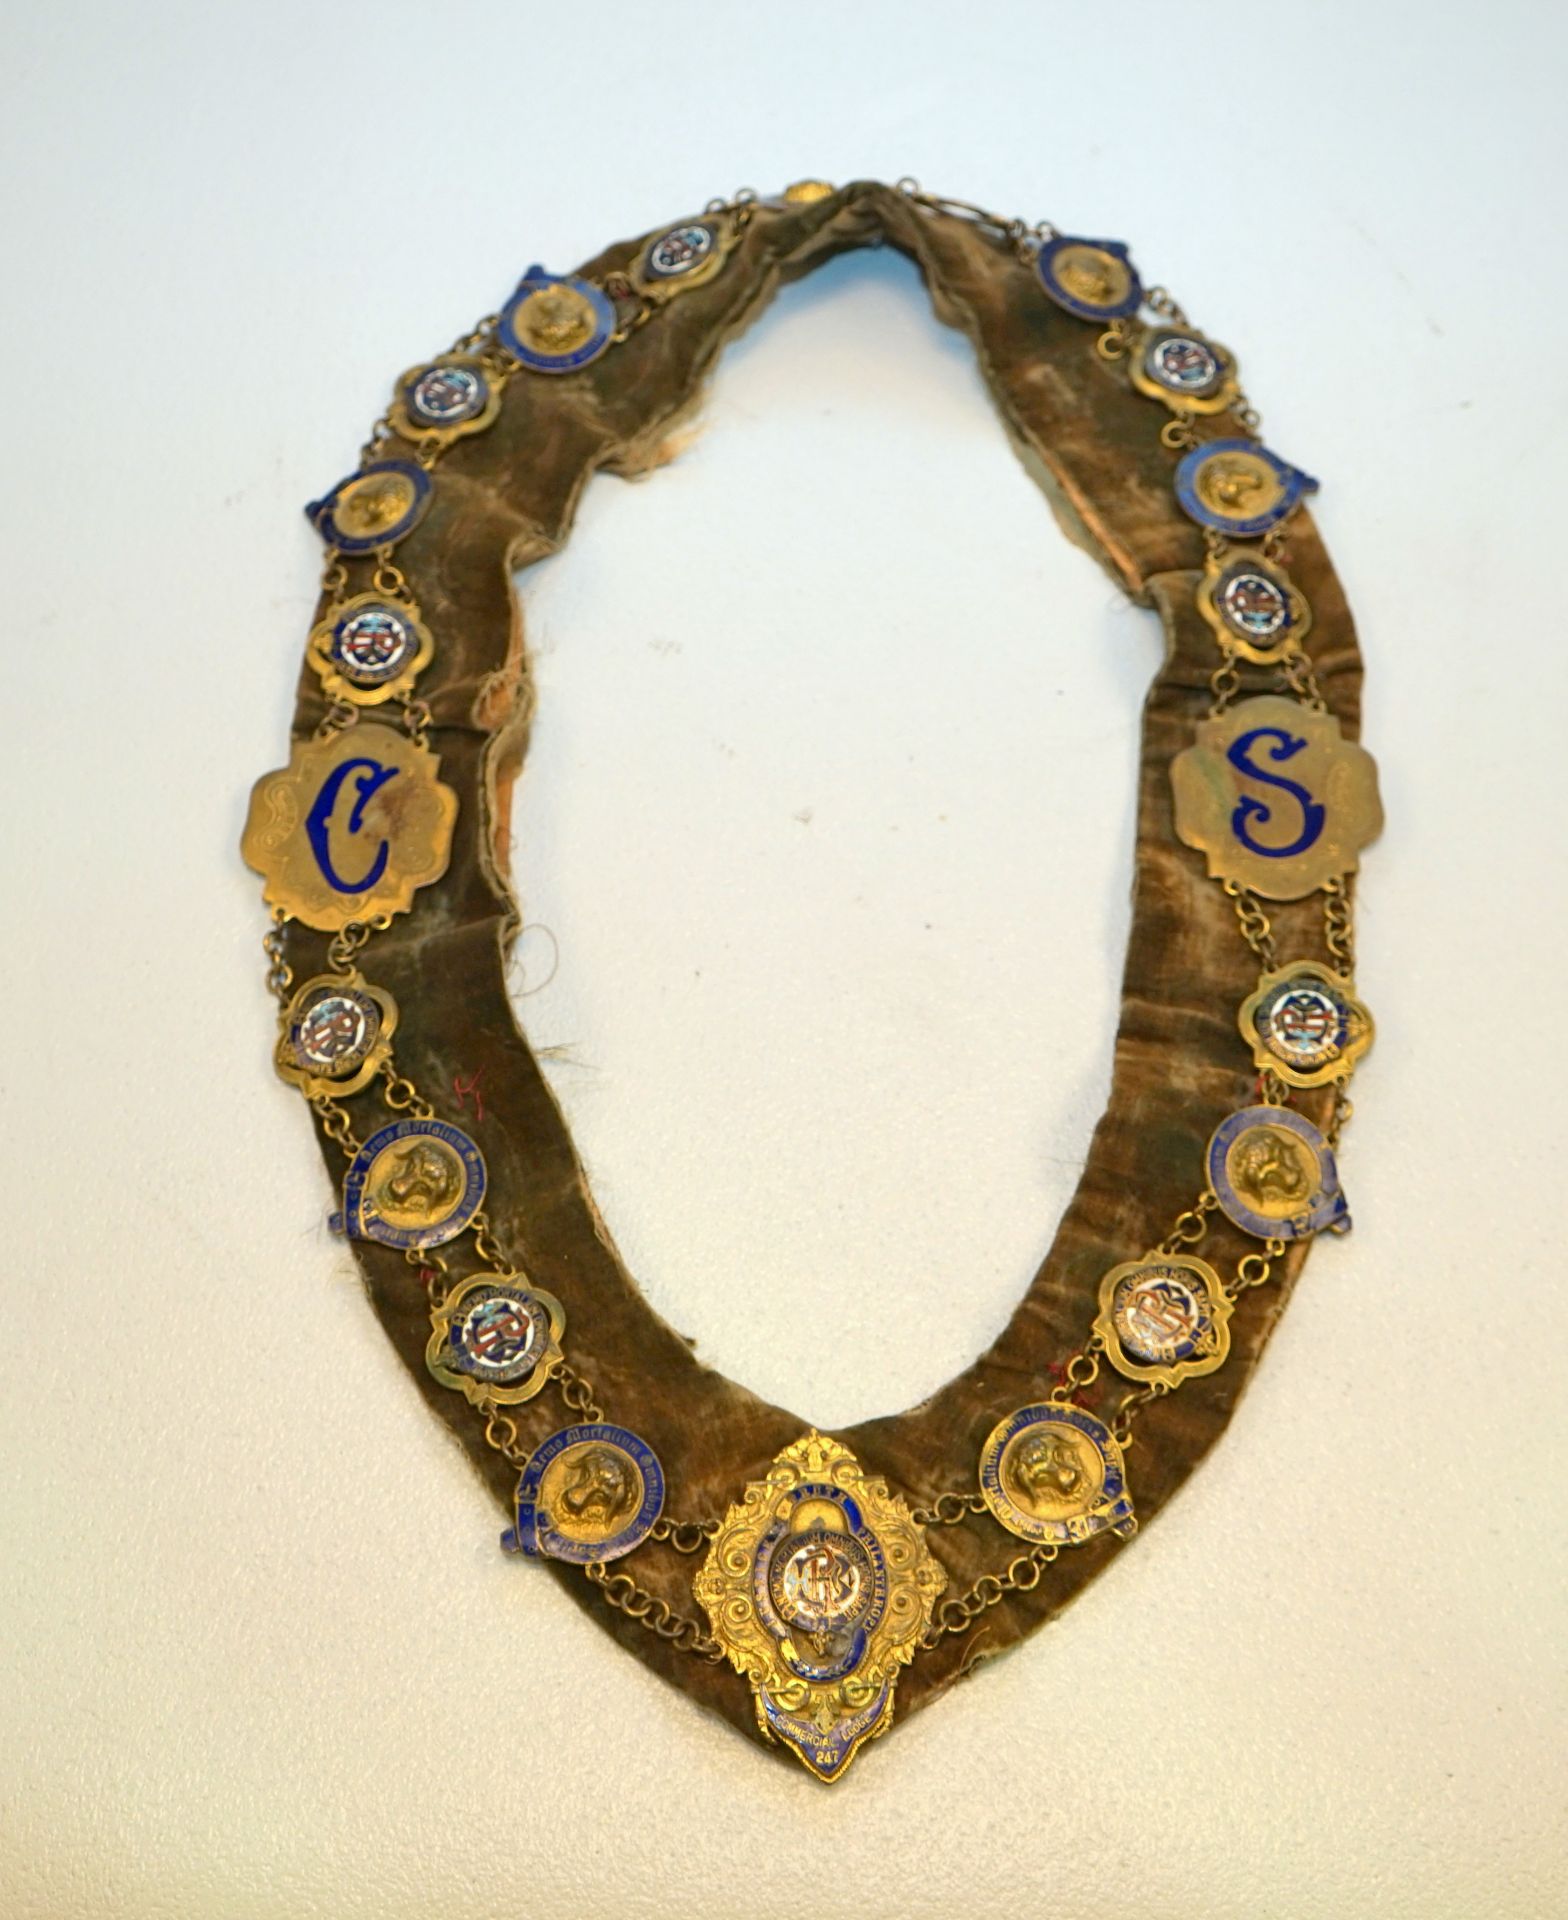 Logenkette des Royal Antediluvian Order of Buffaloes, 19. Jhd.,lange breite Stoffkette besetzt mit